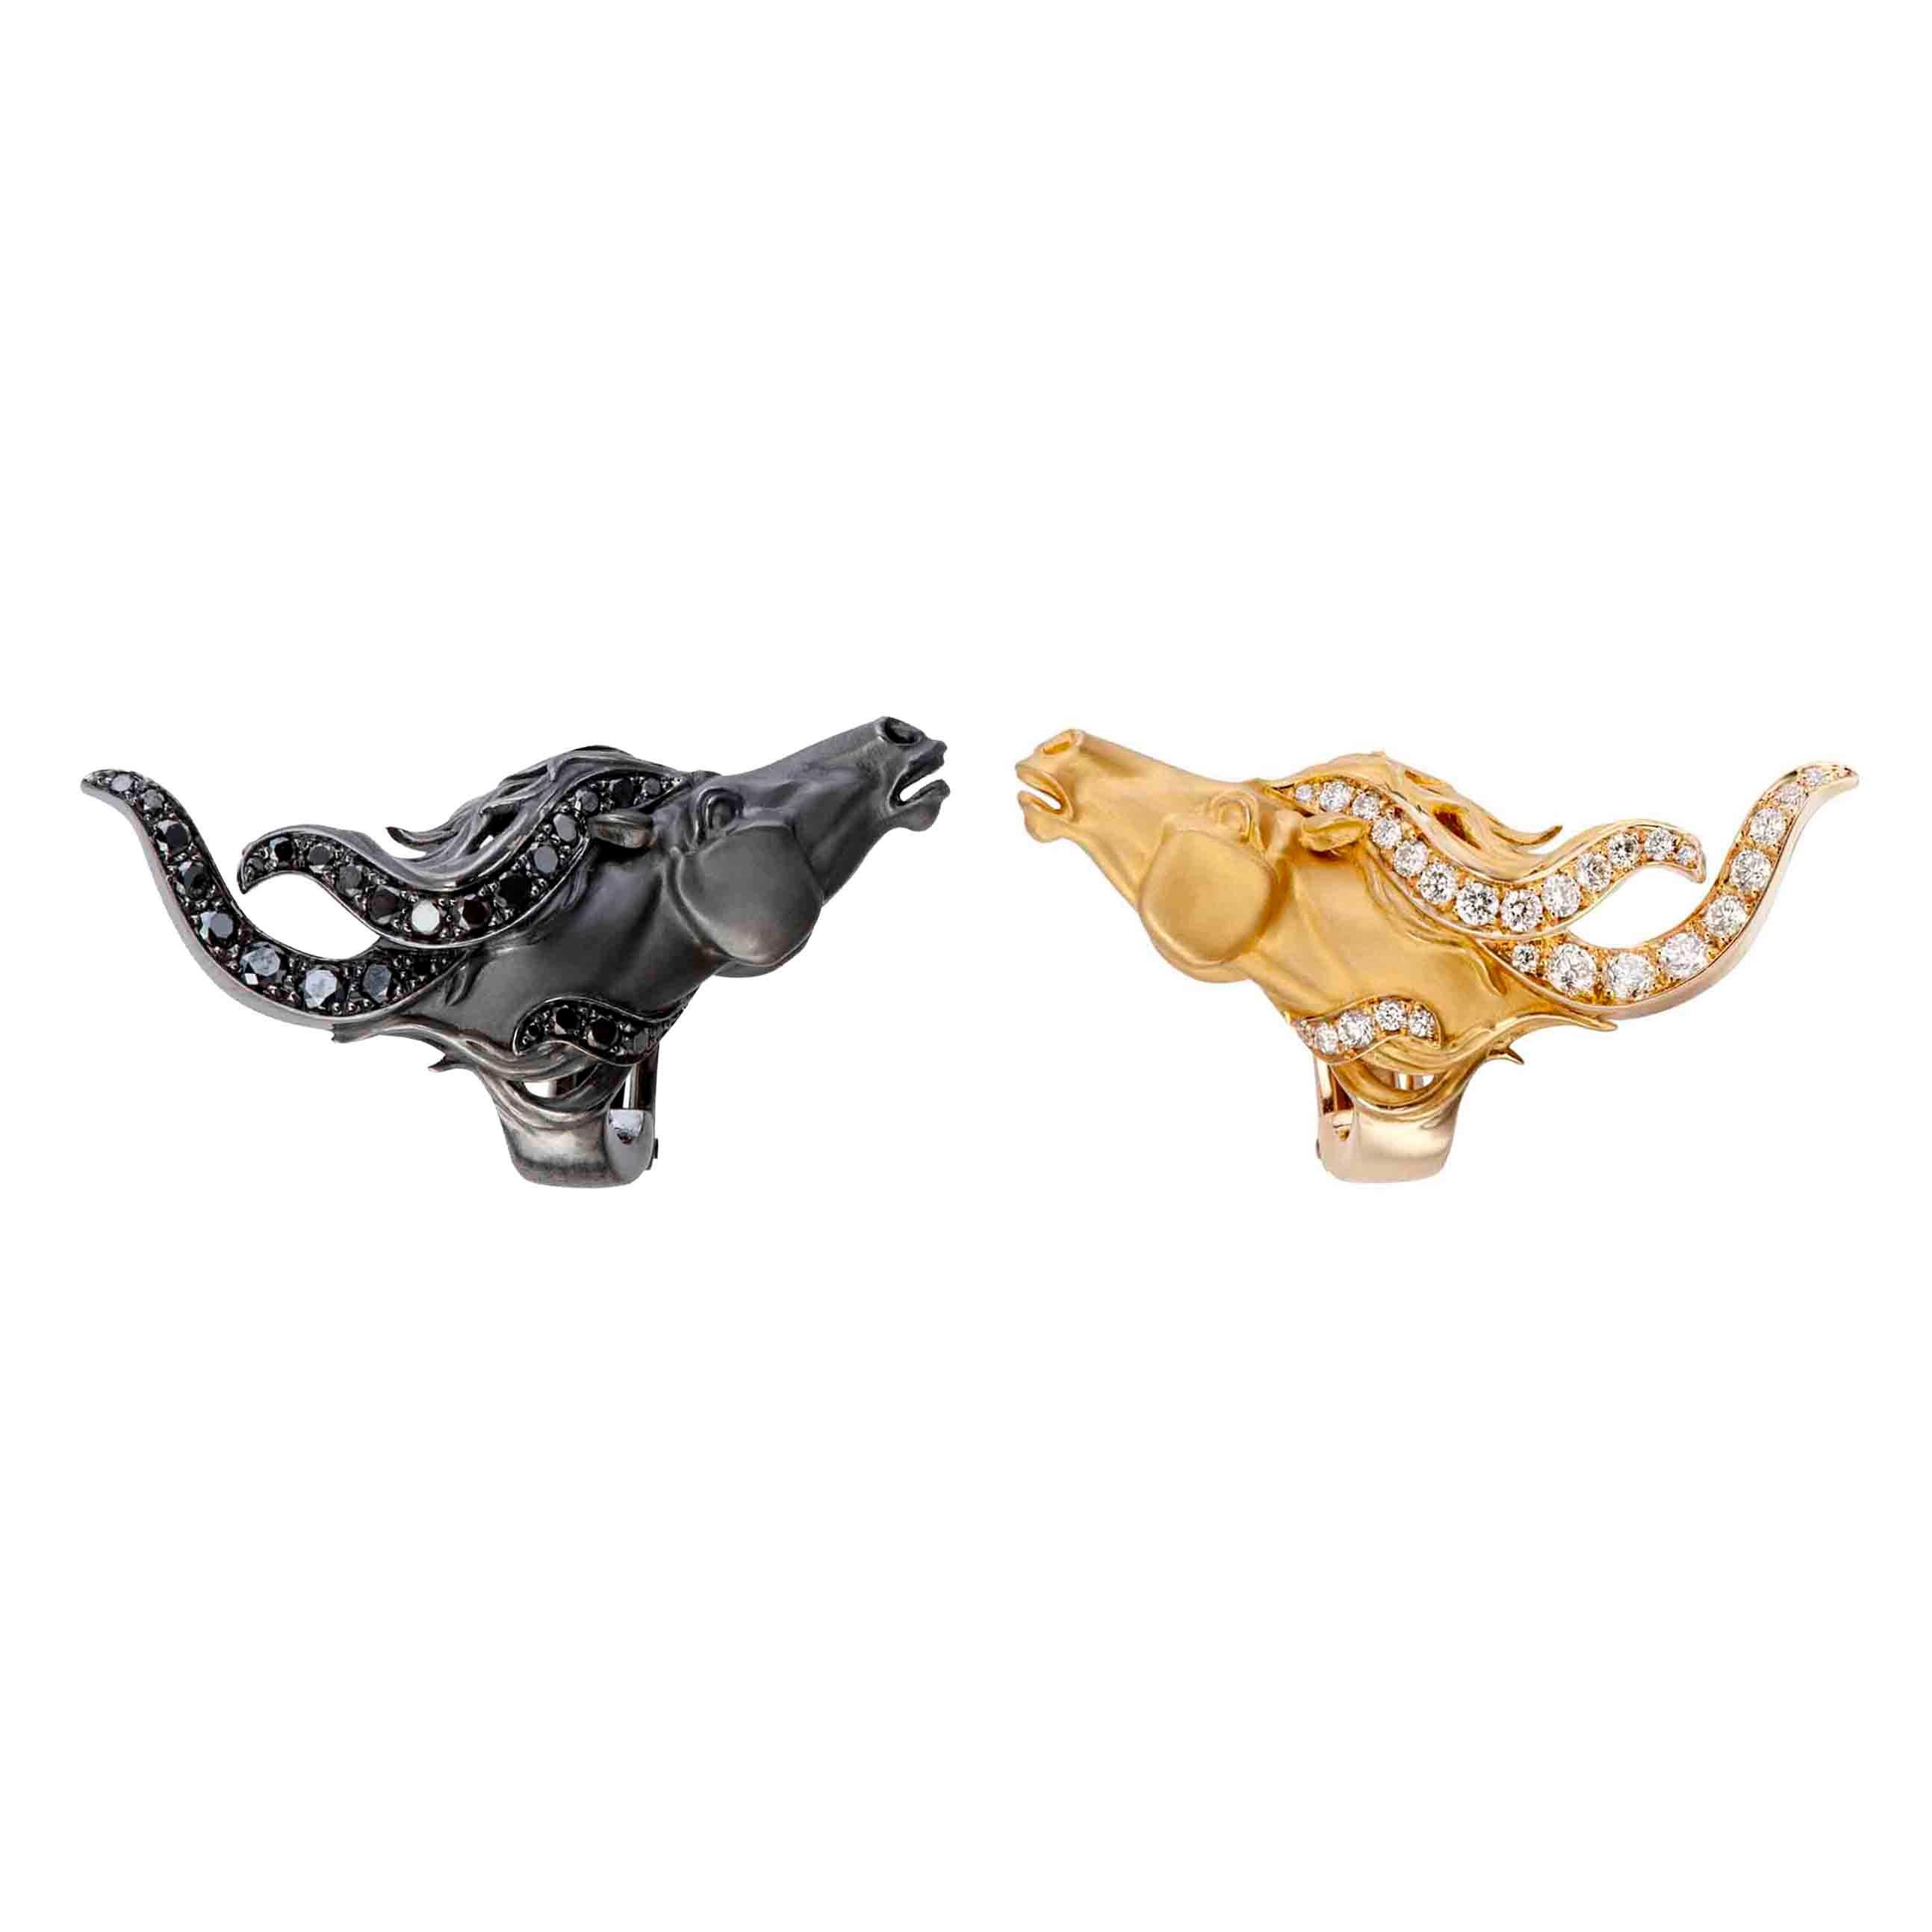 Die von Carrera y Carrera signierten Pferdeköpfe sind aus kontrastierenden Metallen in Gelbgold und Schwarzrhodium gefertigt und haben fließendes, mit Diamanten besetztes Haar. Wild Spirit Ohrringe, mit 0,65 Karat Gesamtdiamant aus 18K Weißgold.